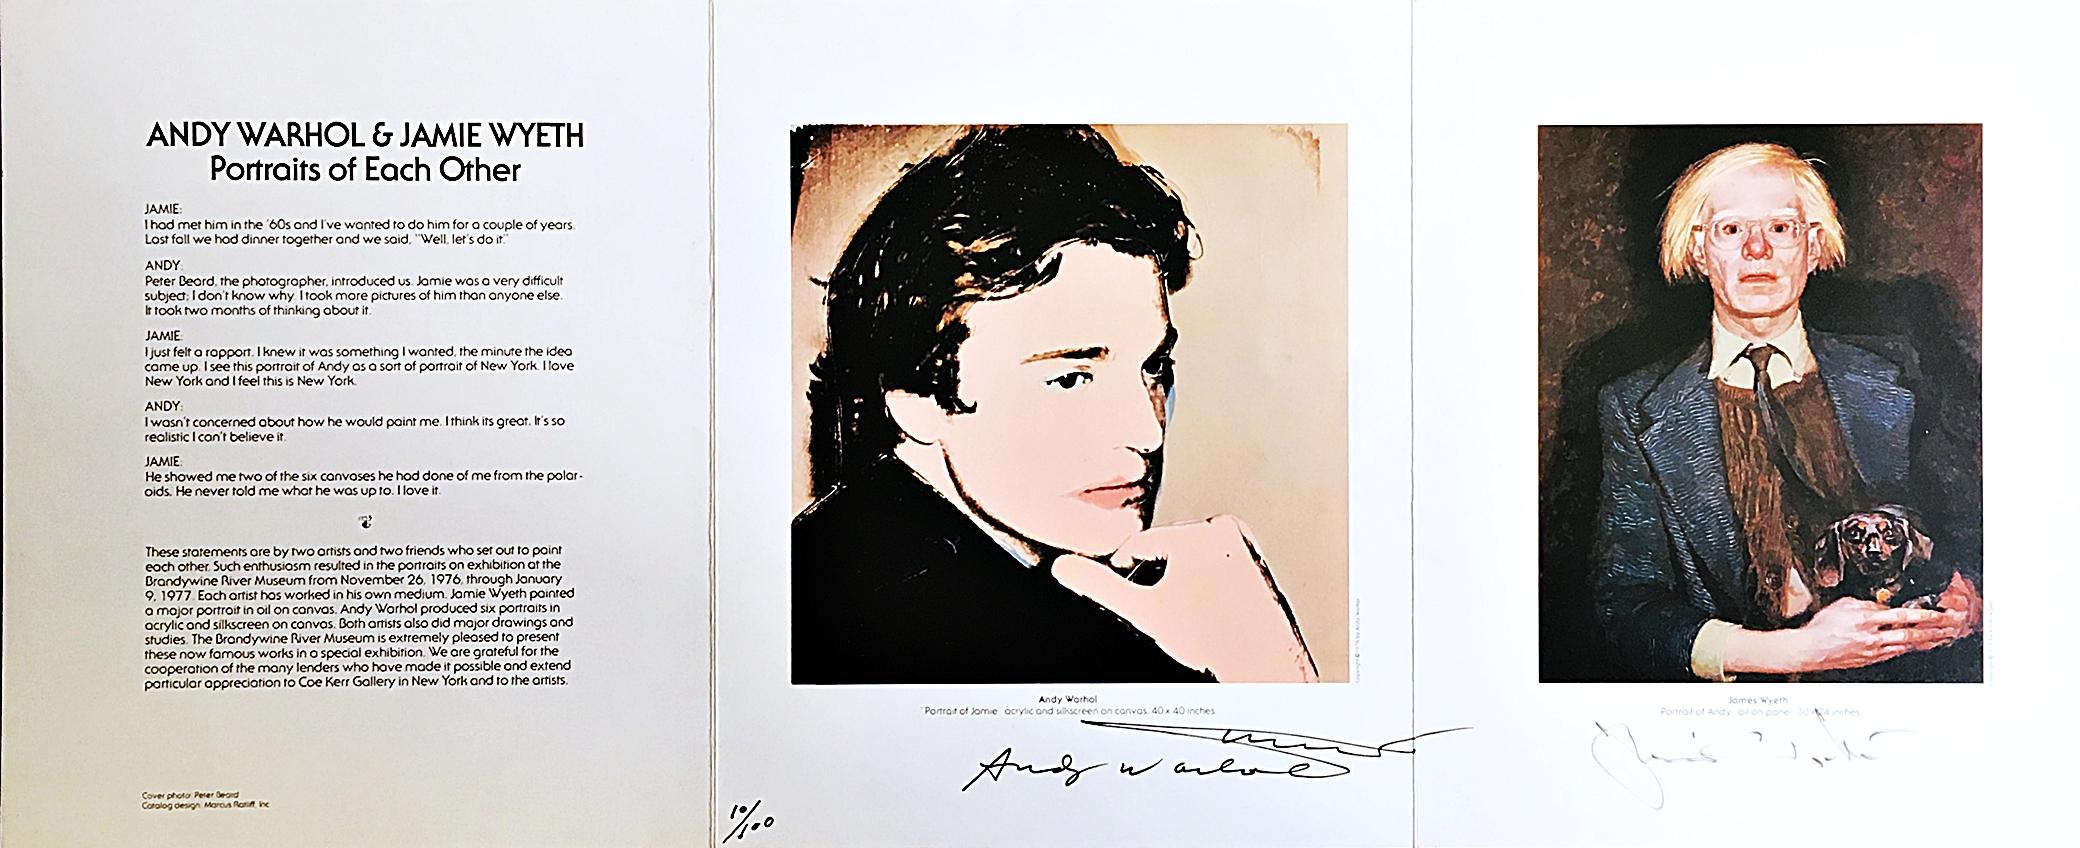 Andy Warhol, Jamie Wyeth
Andy Warhol & Jamie Wyeth: Portraits of Each Other (von Wyeth und Warhol handsigniert), 1976
Limitierte Auflage einer Offsetlithographie
Mit Tinte signiert von Andy Warhol; ein zweites Mal mit Initialen von Warhol direkt